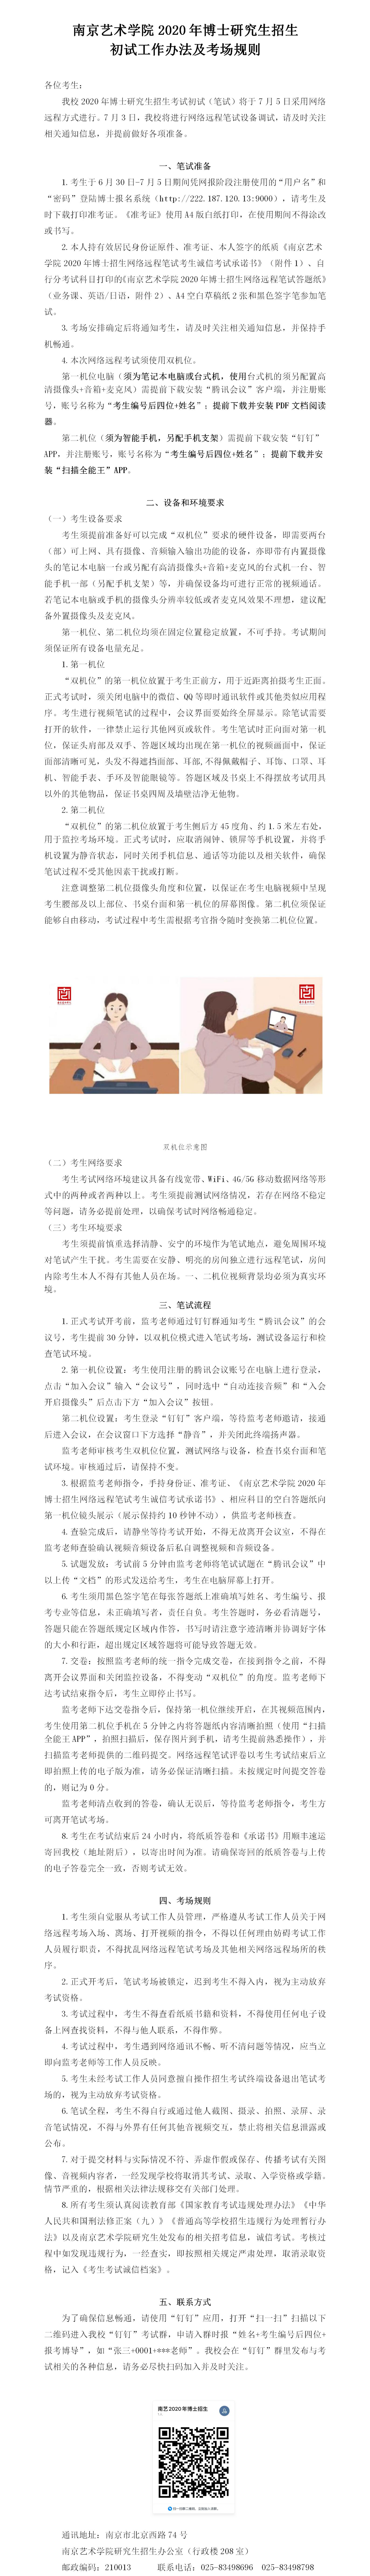 南京艺术学院2020年博士研究生招生考试工作办法及考场规则